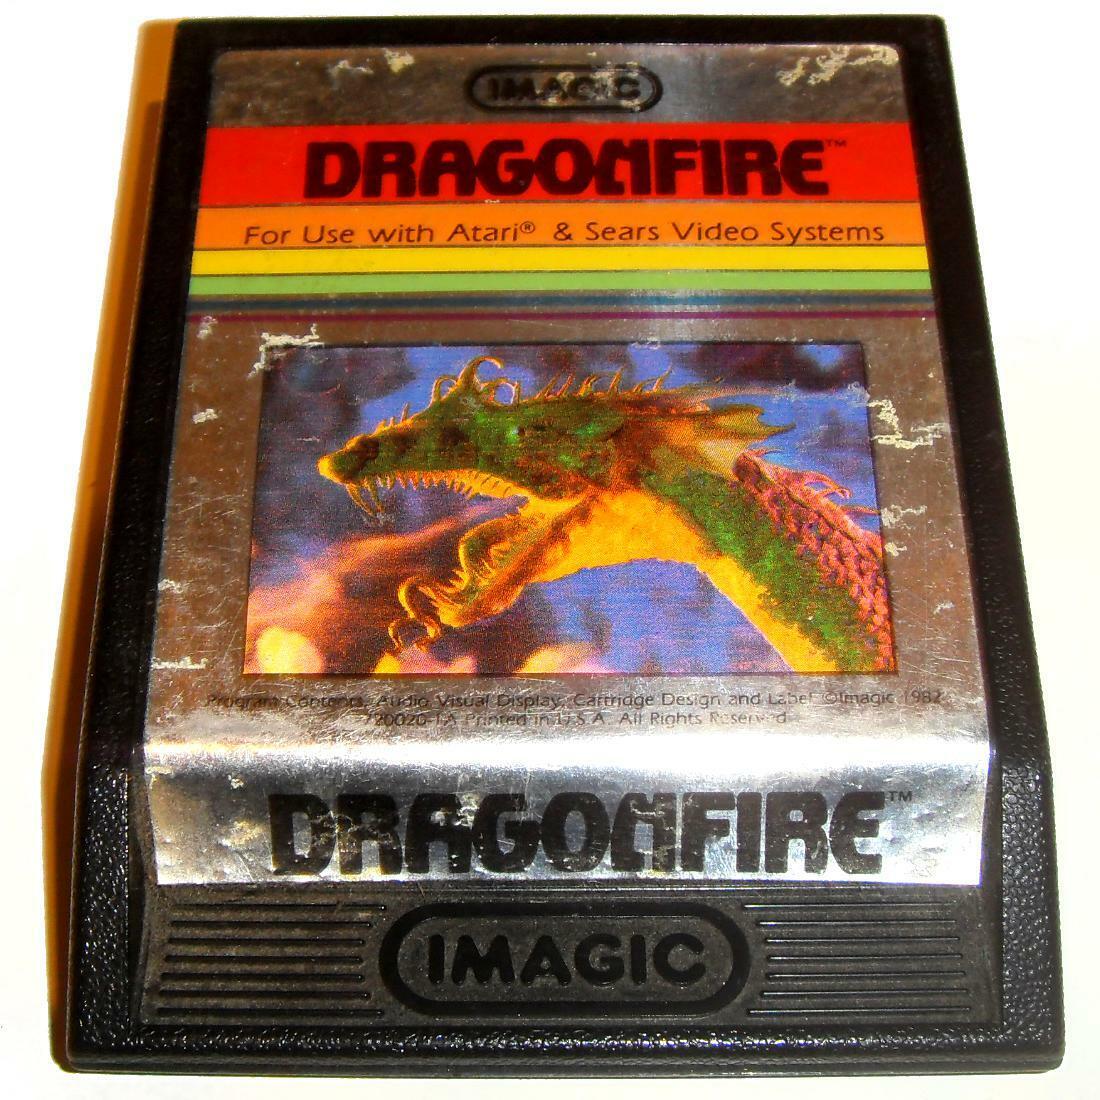 JOUEZ PLUS VITE avec la version américaine de DRAGONFIRE Atari 2600 VCS NTSC